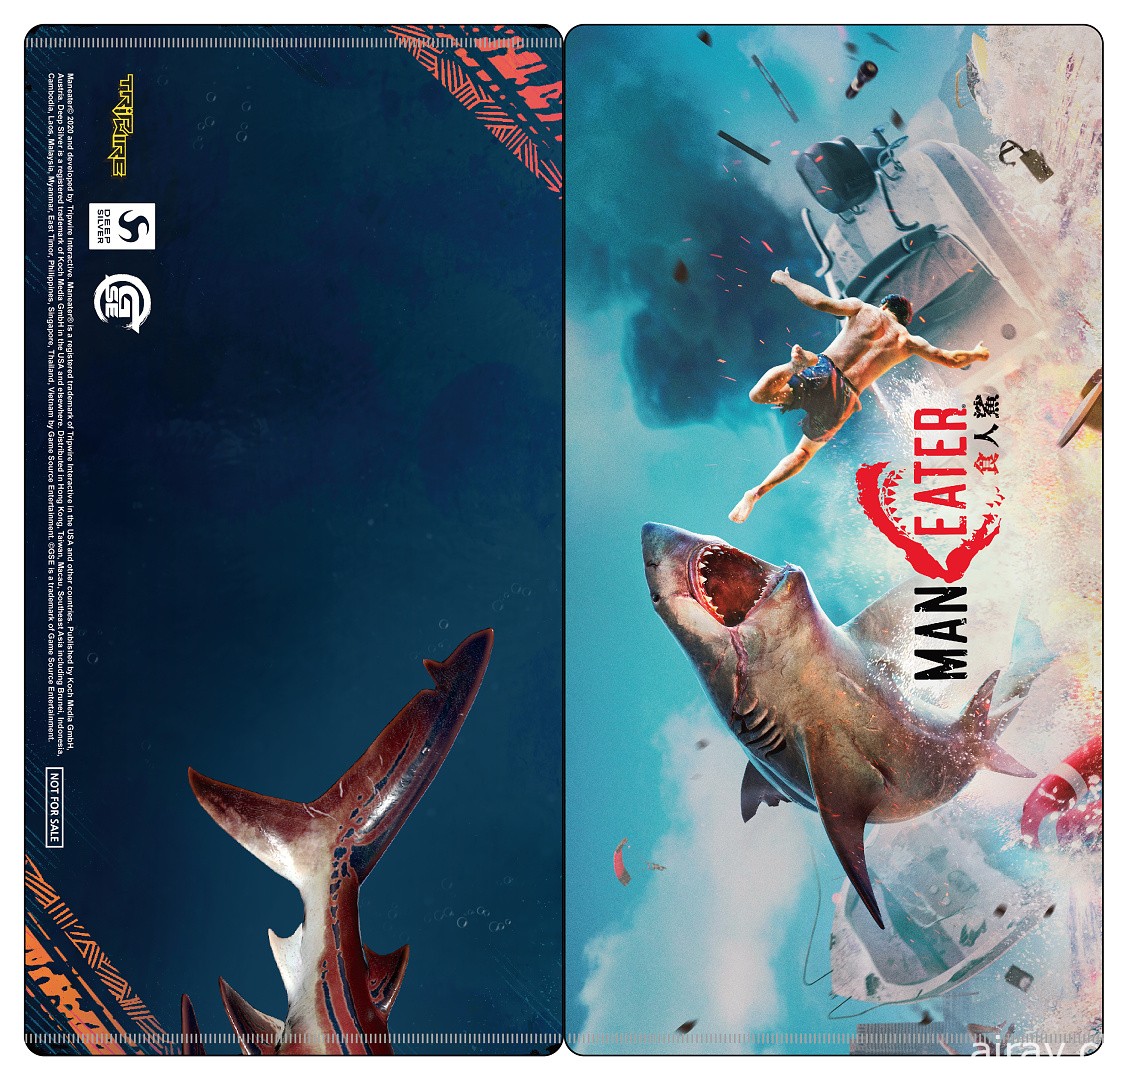 《食人鲨 Maneater》公开中文版开发者日记 加码 PS5 及 PS4 版预购特典